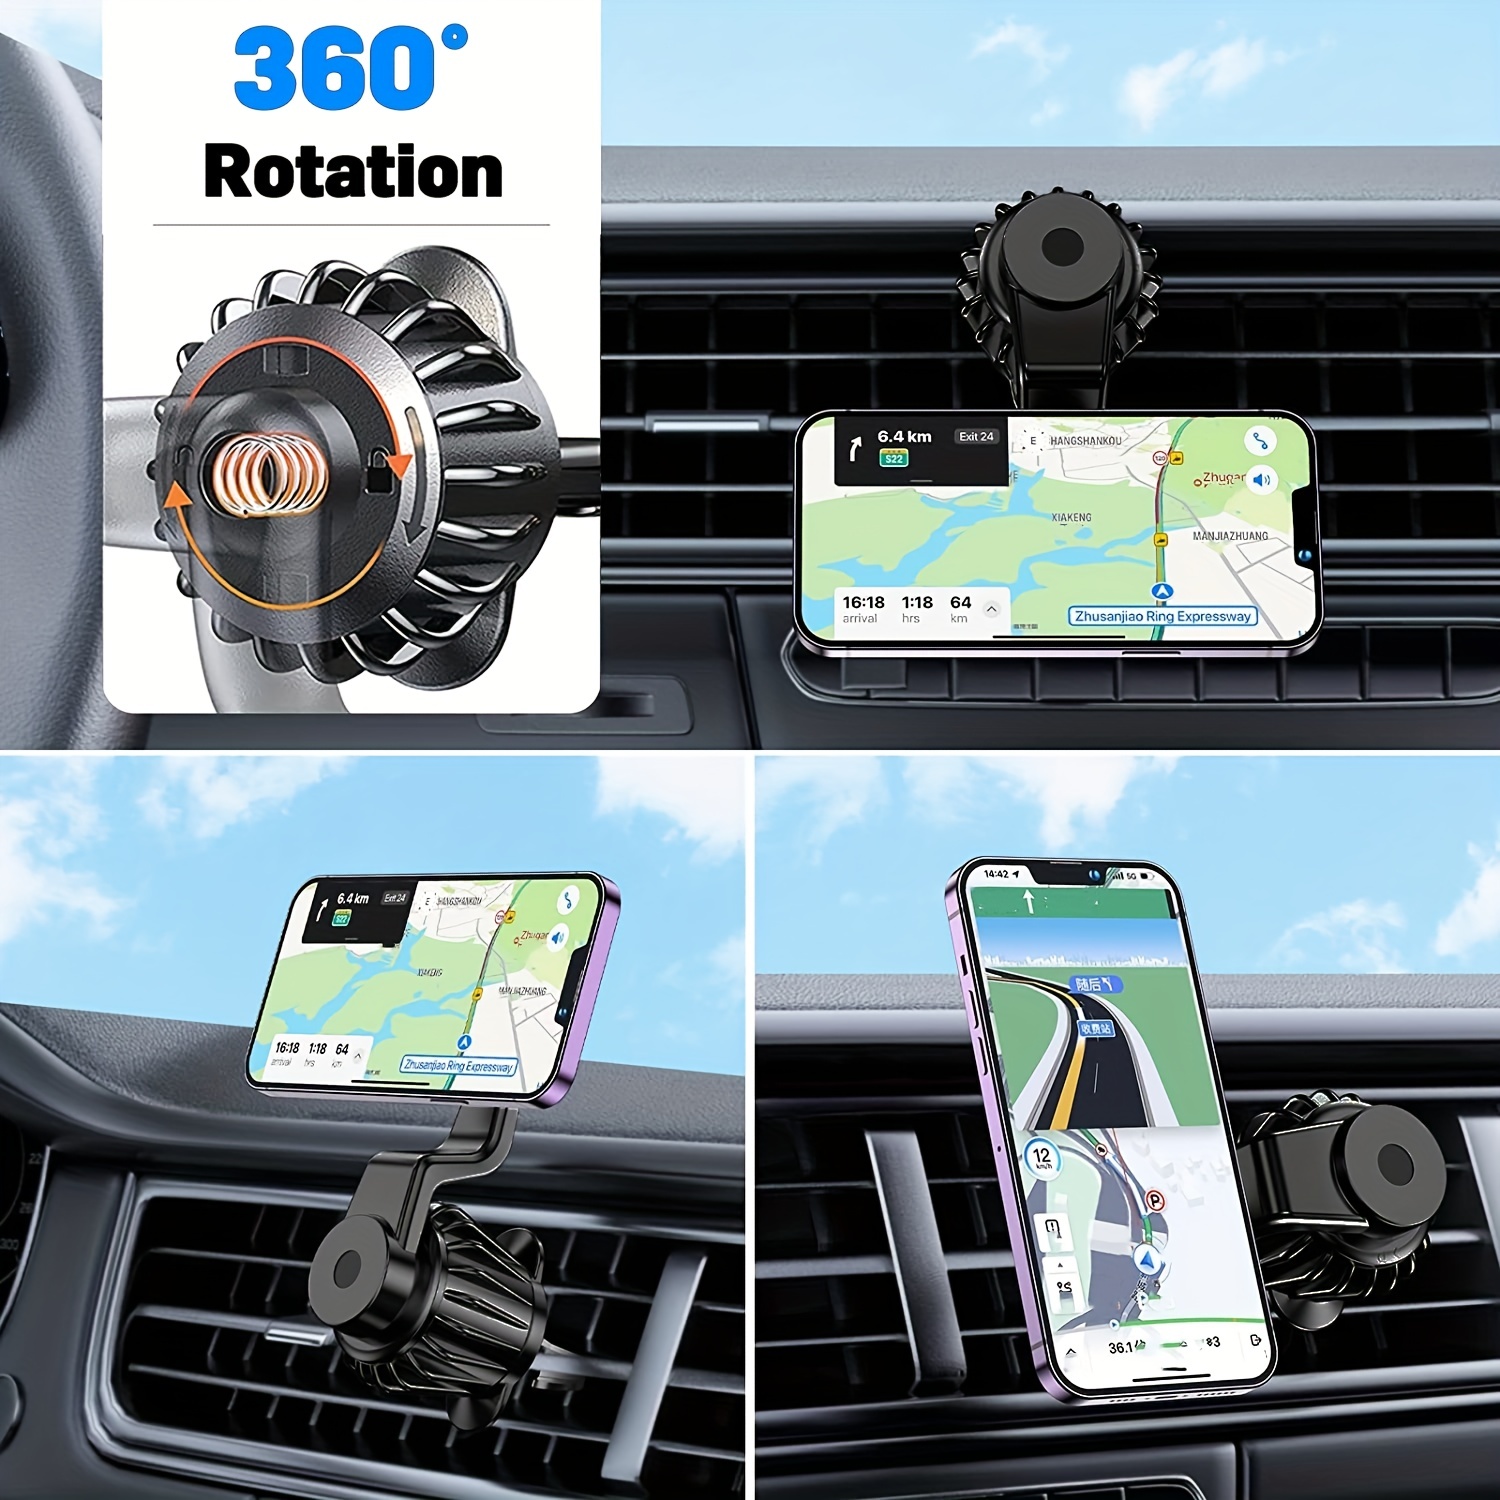 Magnetischer Handyhalter Für Das Auto-Lüftungsgitter, Verbesserte  Clip-Auto-Lüftungsgitter Magnetischer Handyhalter, 360°-Drehung  Magnetischer